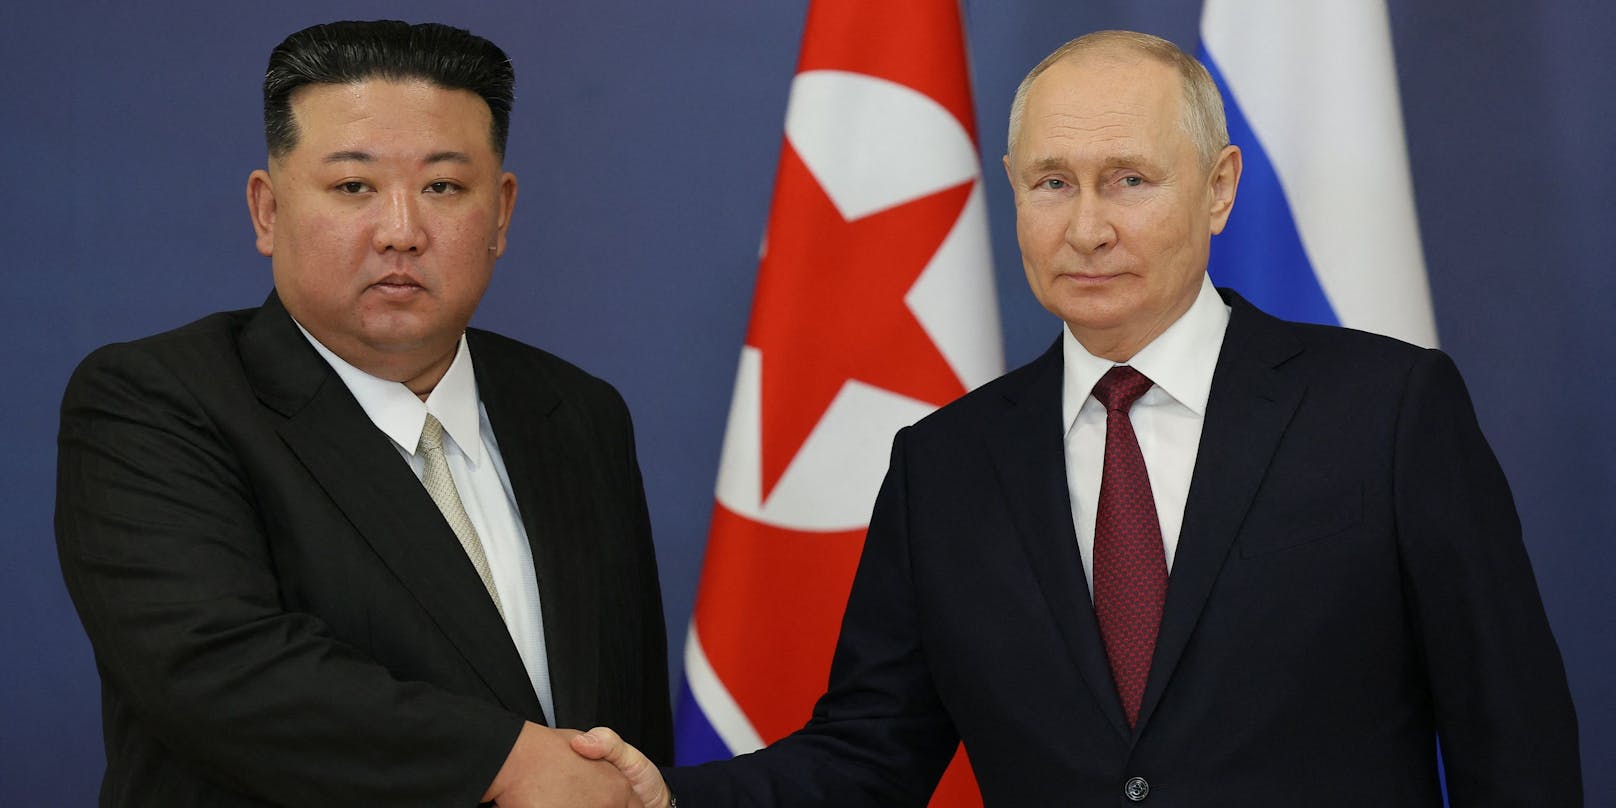 Nordkorea werde "immer an der Seite Russlands stehen", sagte Kim am Mittwoch bei seinem Treffen mit dem russischen Präsidenten Wladimir Putin.